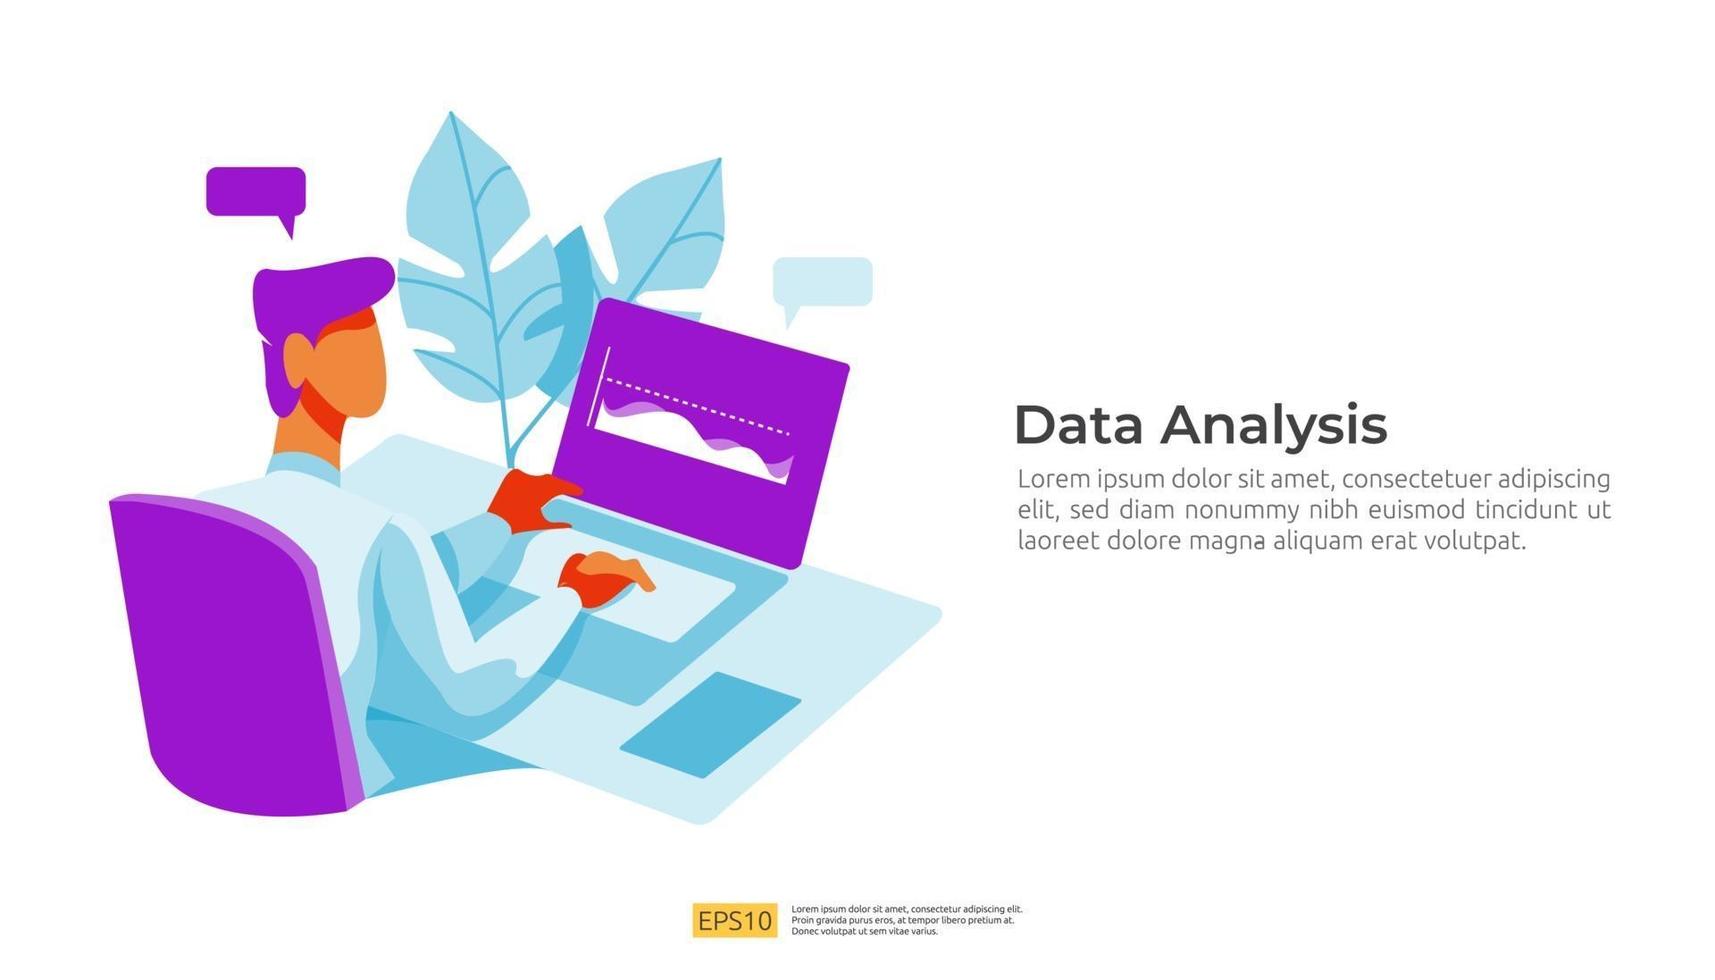 visualisation de l'analyse numérique des données avec caractère, concept de graphiques vecteur